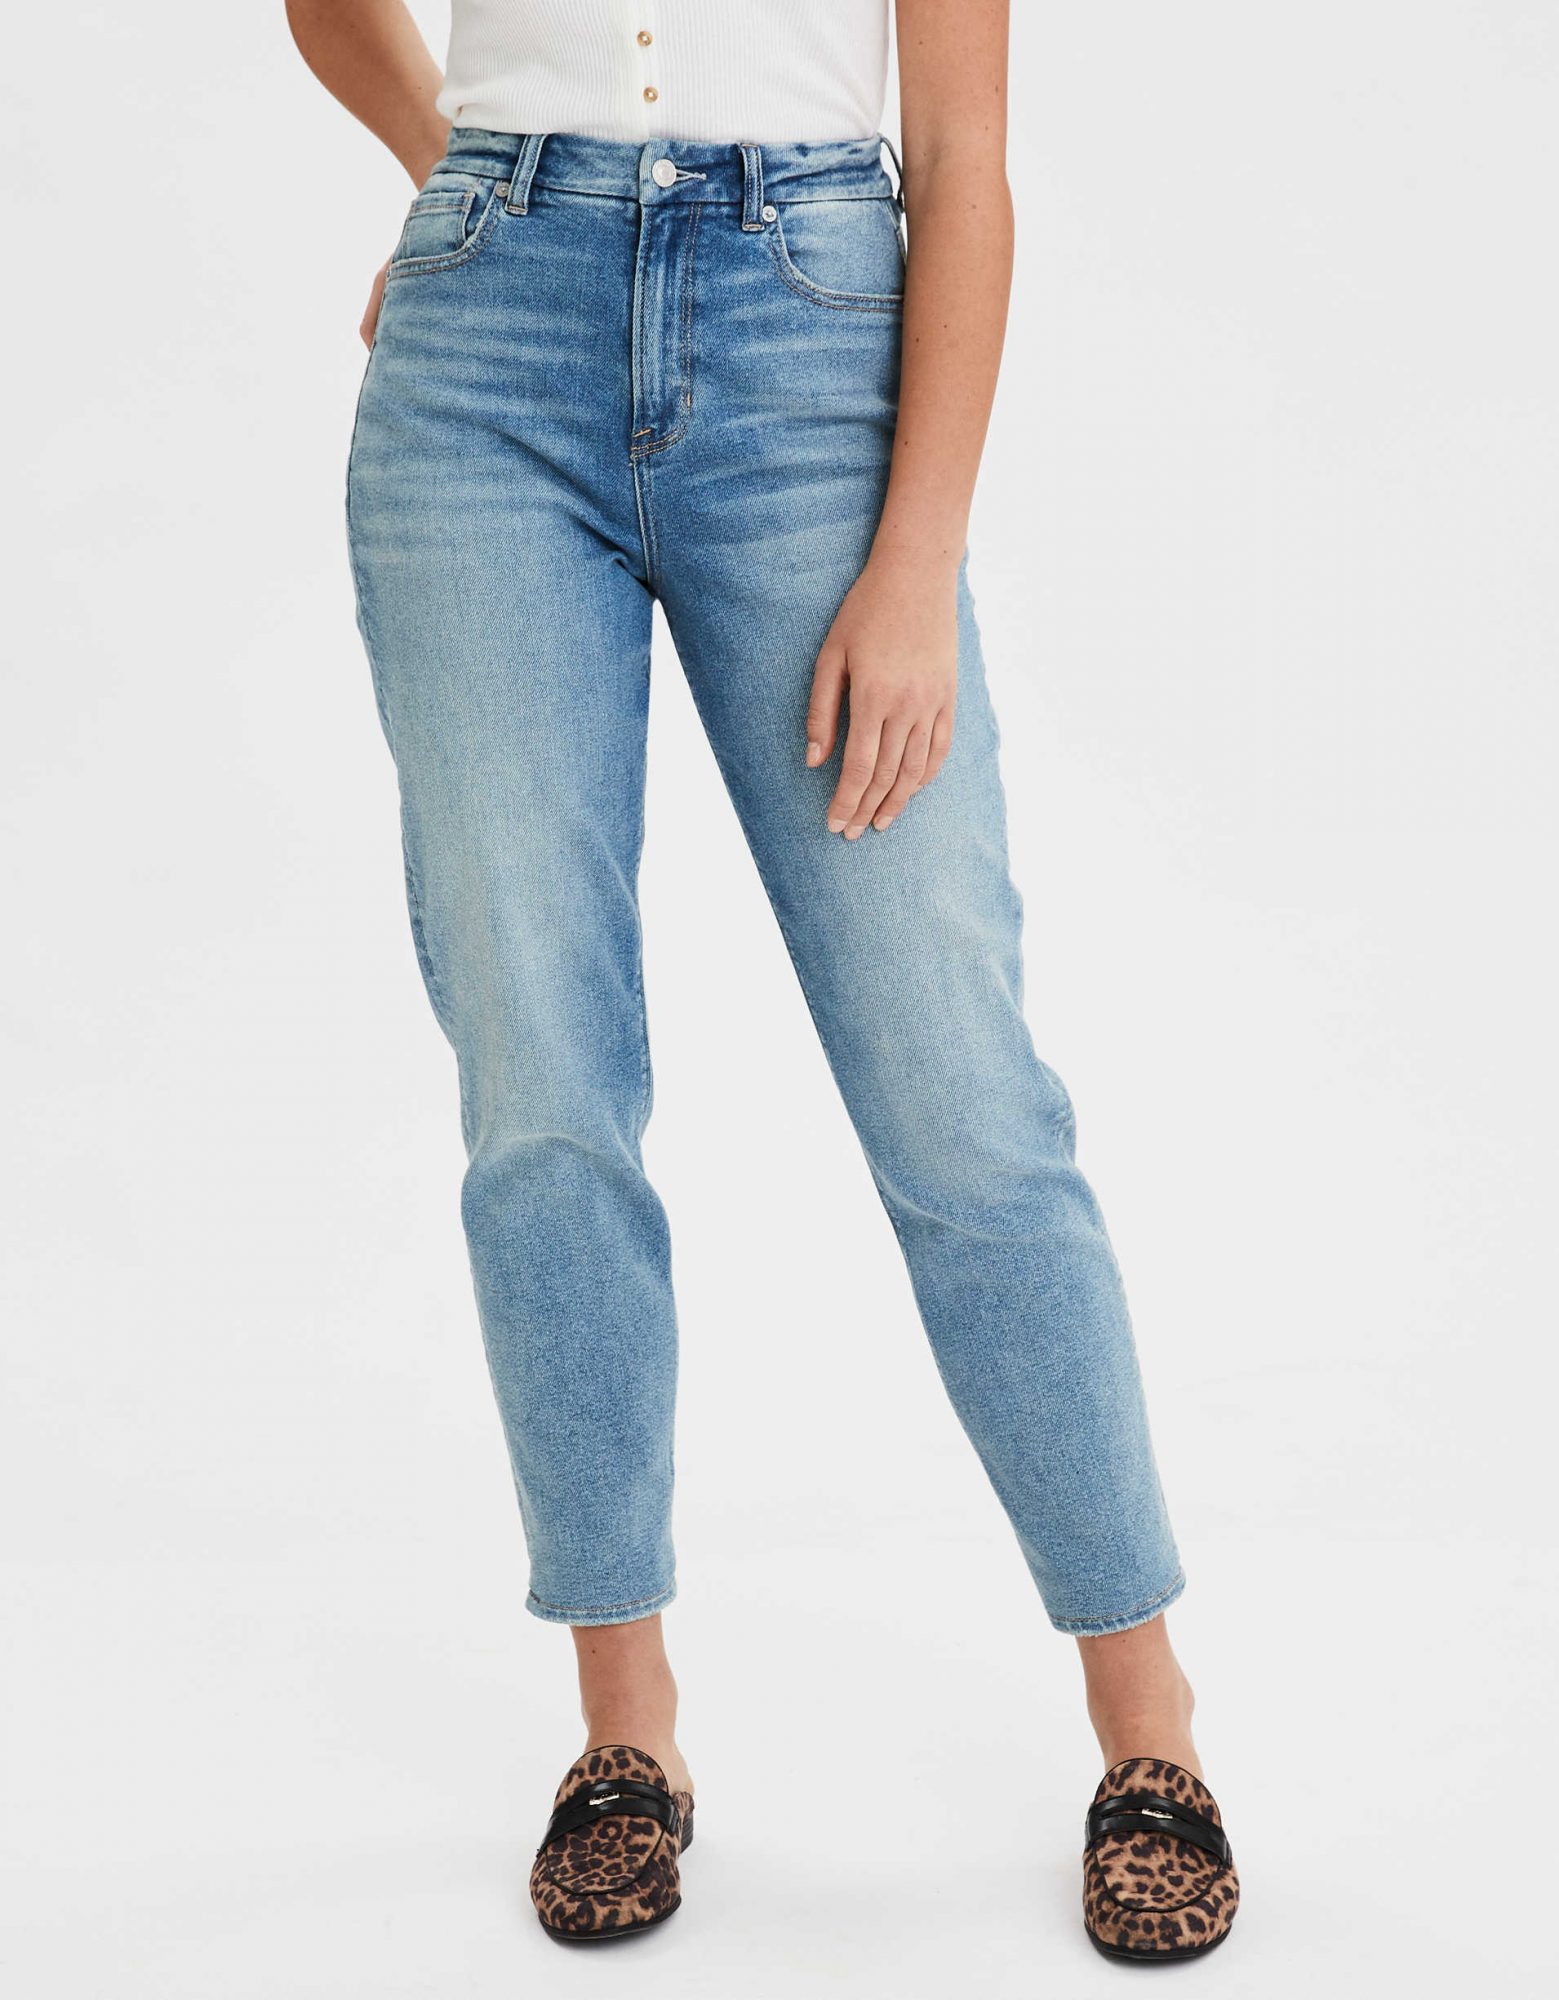 plus-size jeans